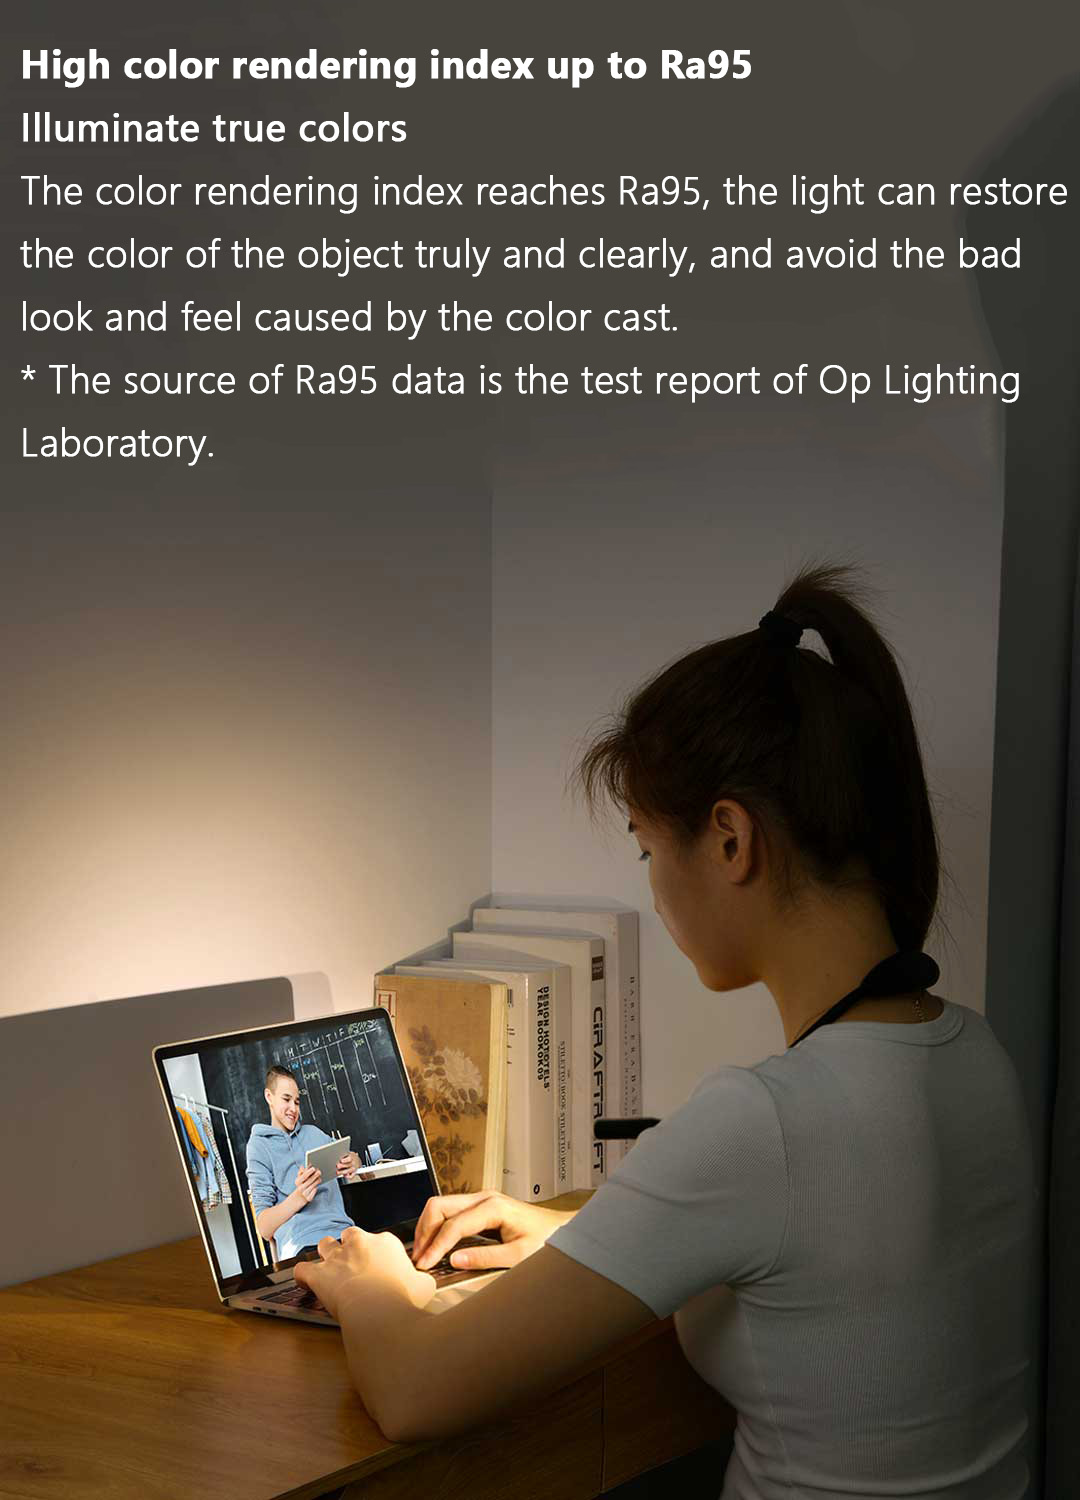 Đèn đọc sách Xiaomi Youpin Opple có cổng cắm sạc Usb chất lượng cao